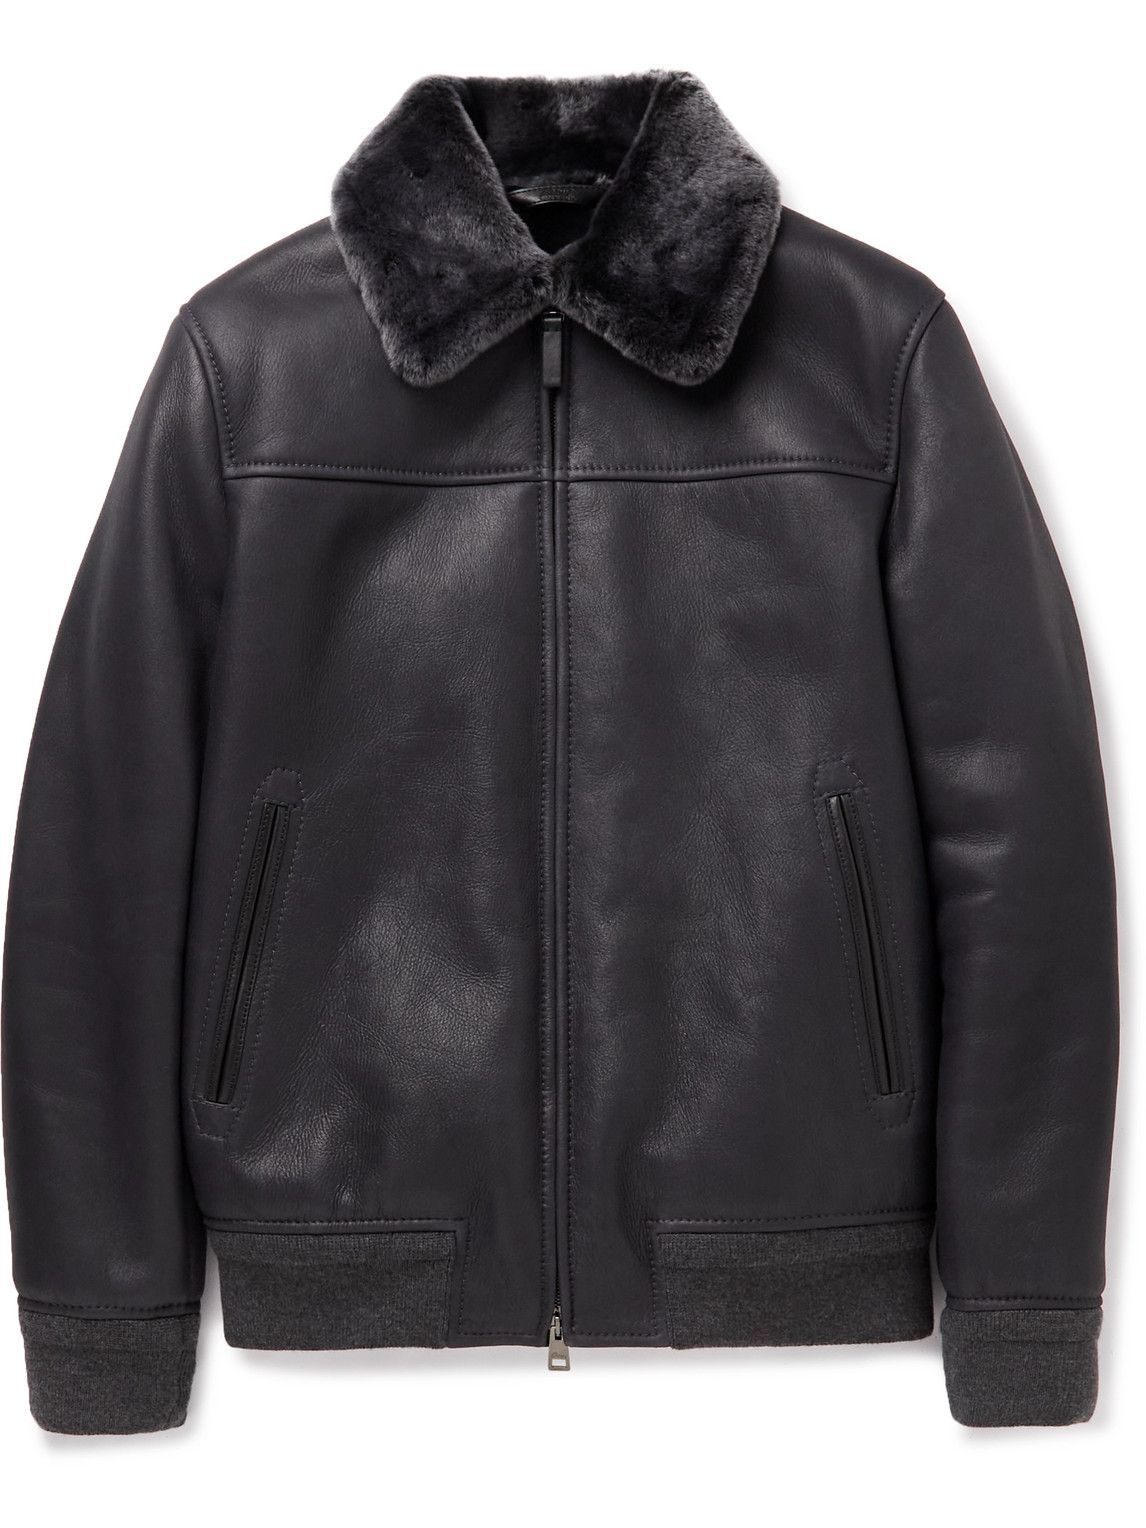 Leather jacket Brioni - Reversible leather jacket - PBC20LO97242142